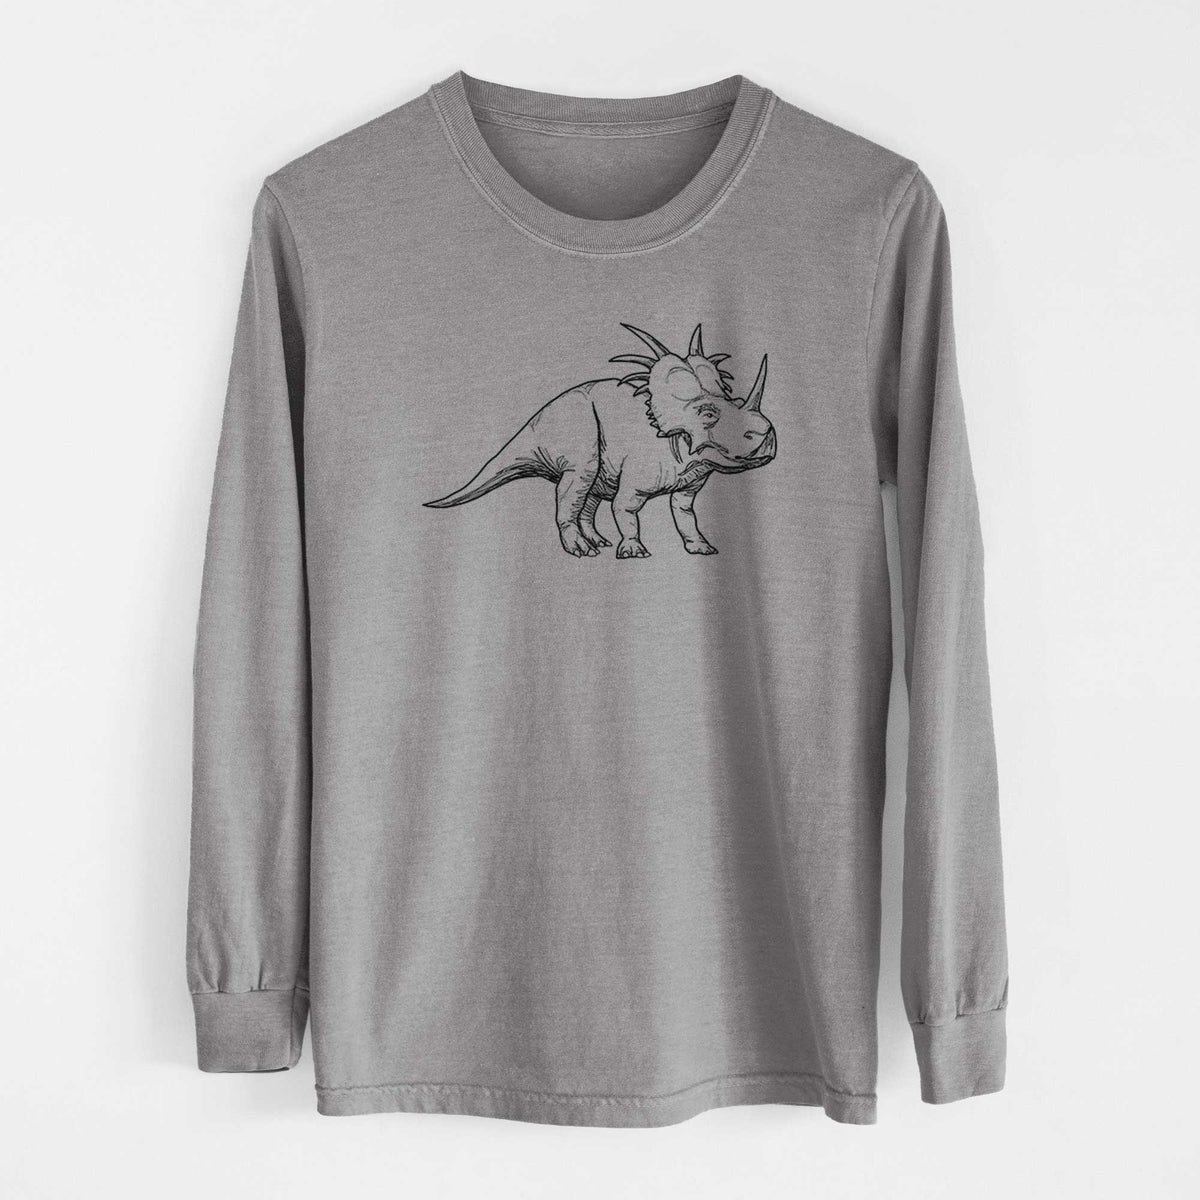 Styracosaurus Albertensis - Heavyweight 100% Cotton Long Sleeve